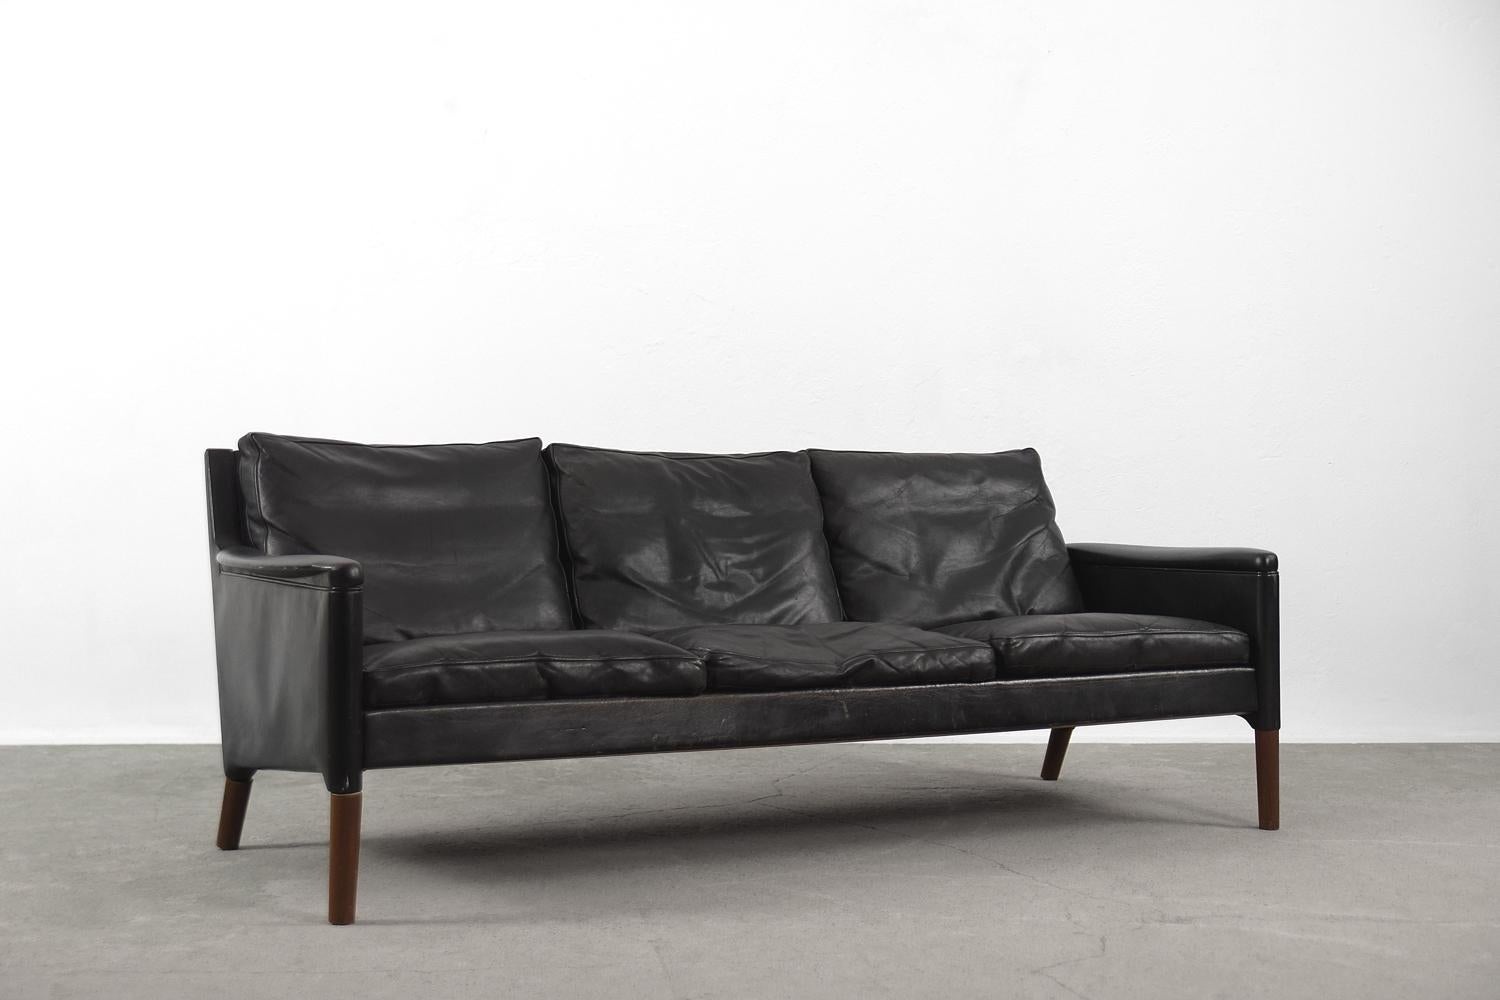 Ce canapé trois places en cuir a été conçu par Kurt Østervig pour le fabricant danois Centrum Møbler dans les années 1950. Il s'agit du modèle 55 du début de la production. Le canapé est revêtu de cuir noir à la patine naturelle. Les pieds sont en